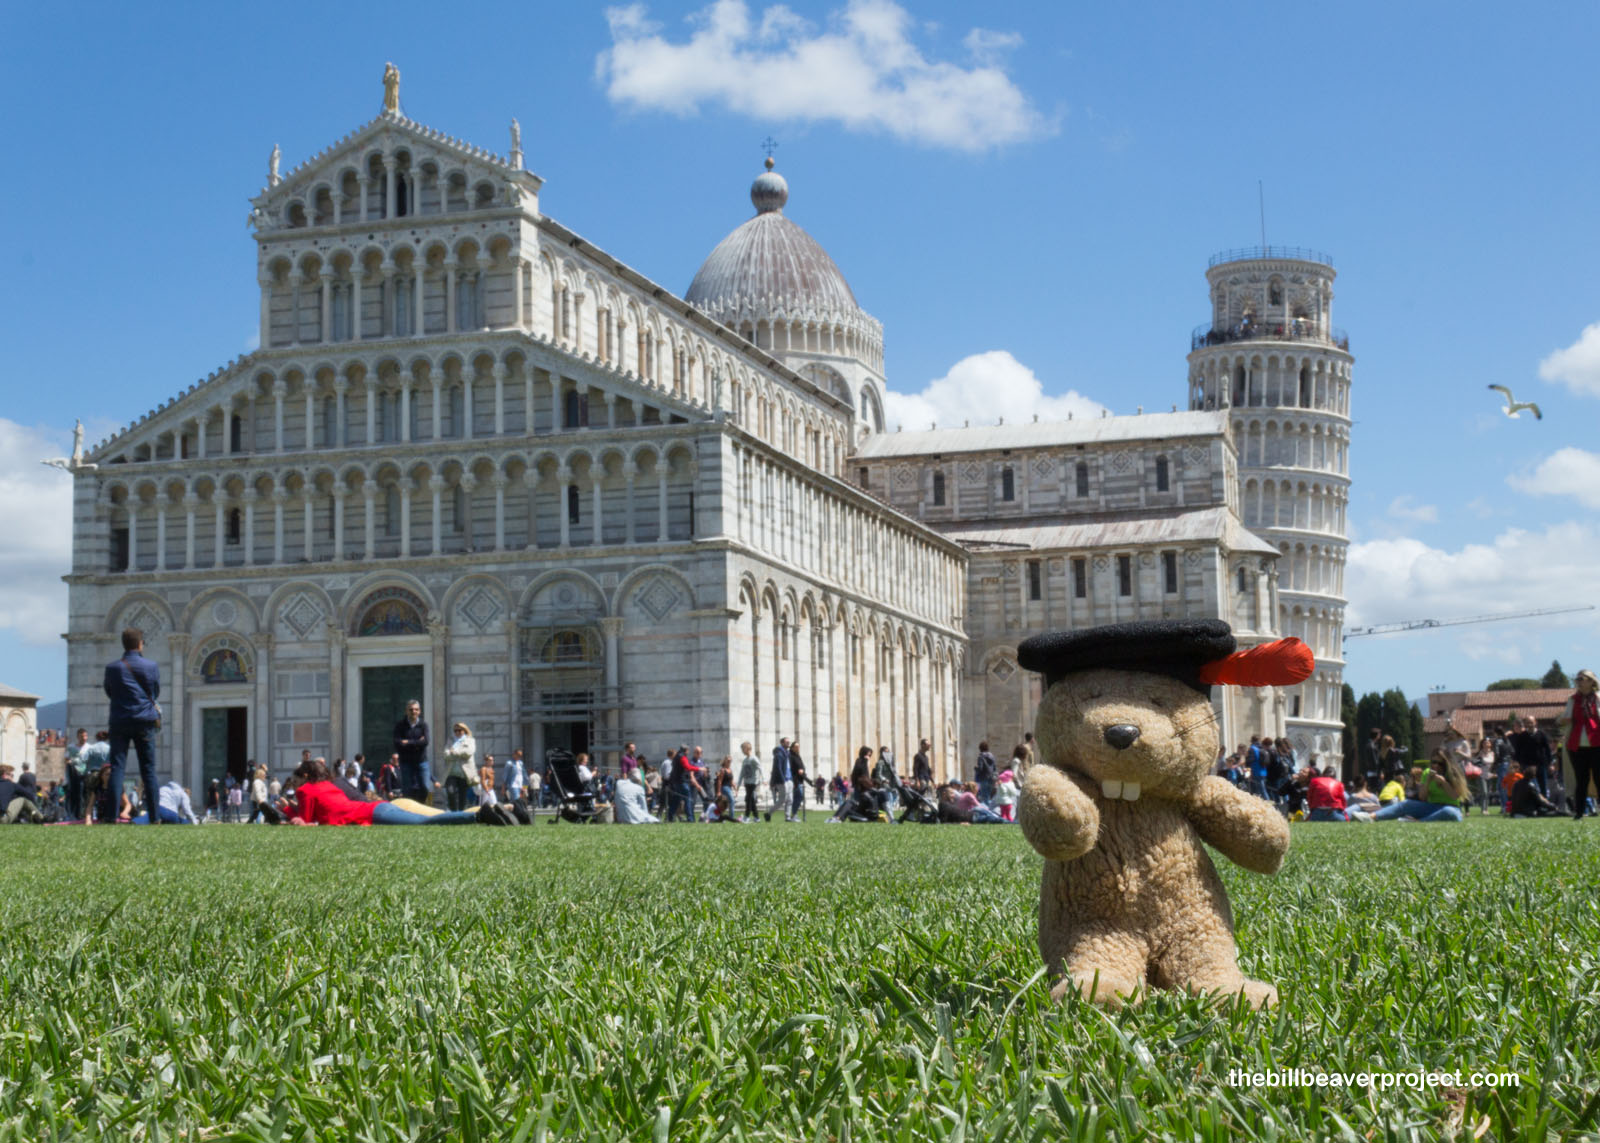 Duomo di Pisa